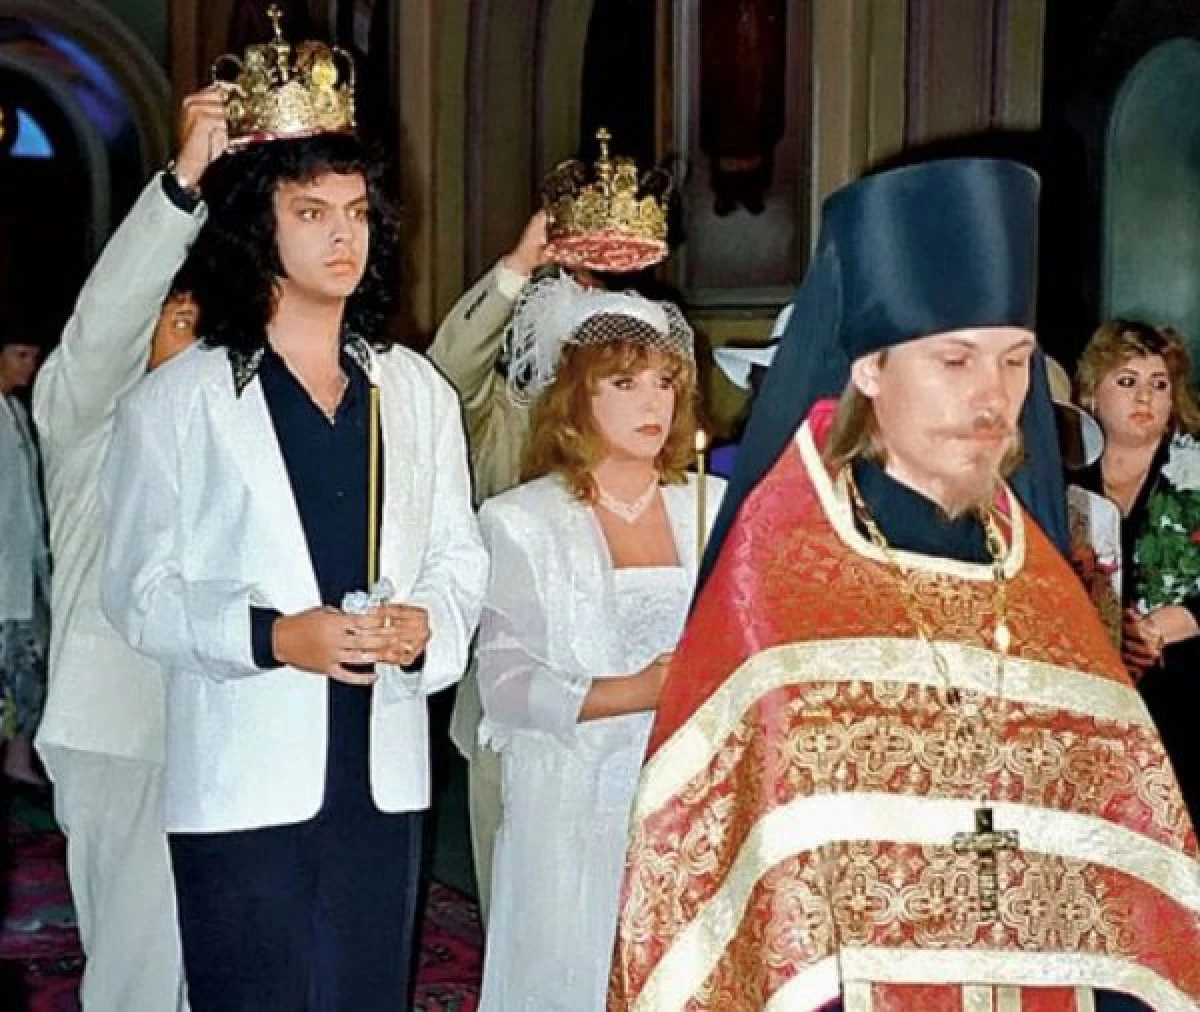 Τι έκανε ο θρυλικός τραγουδιστής την ημέρα του γάμου τους: Pugacheva, Rotaru, Babkina - Archival Photos 23254_5